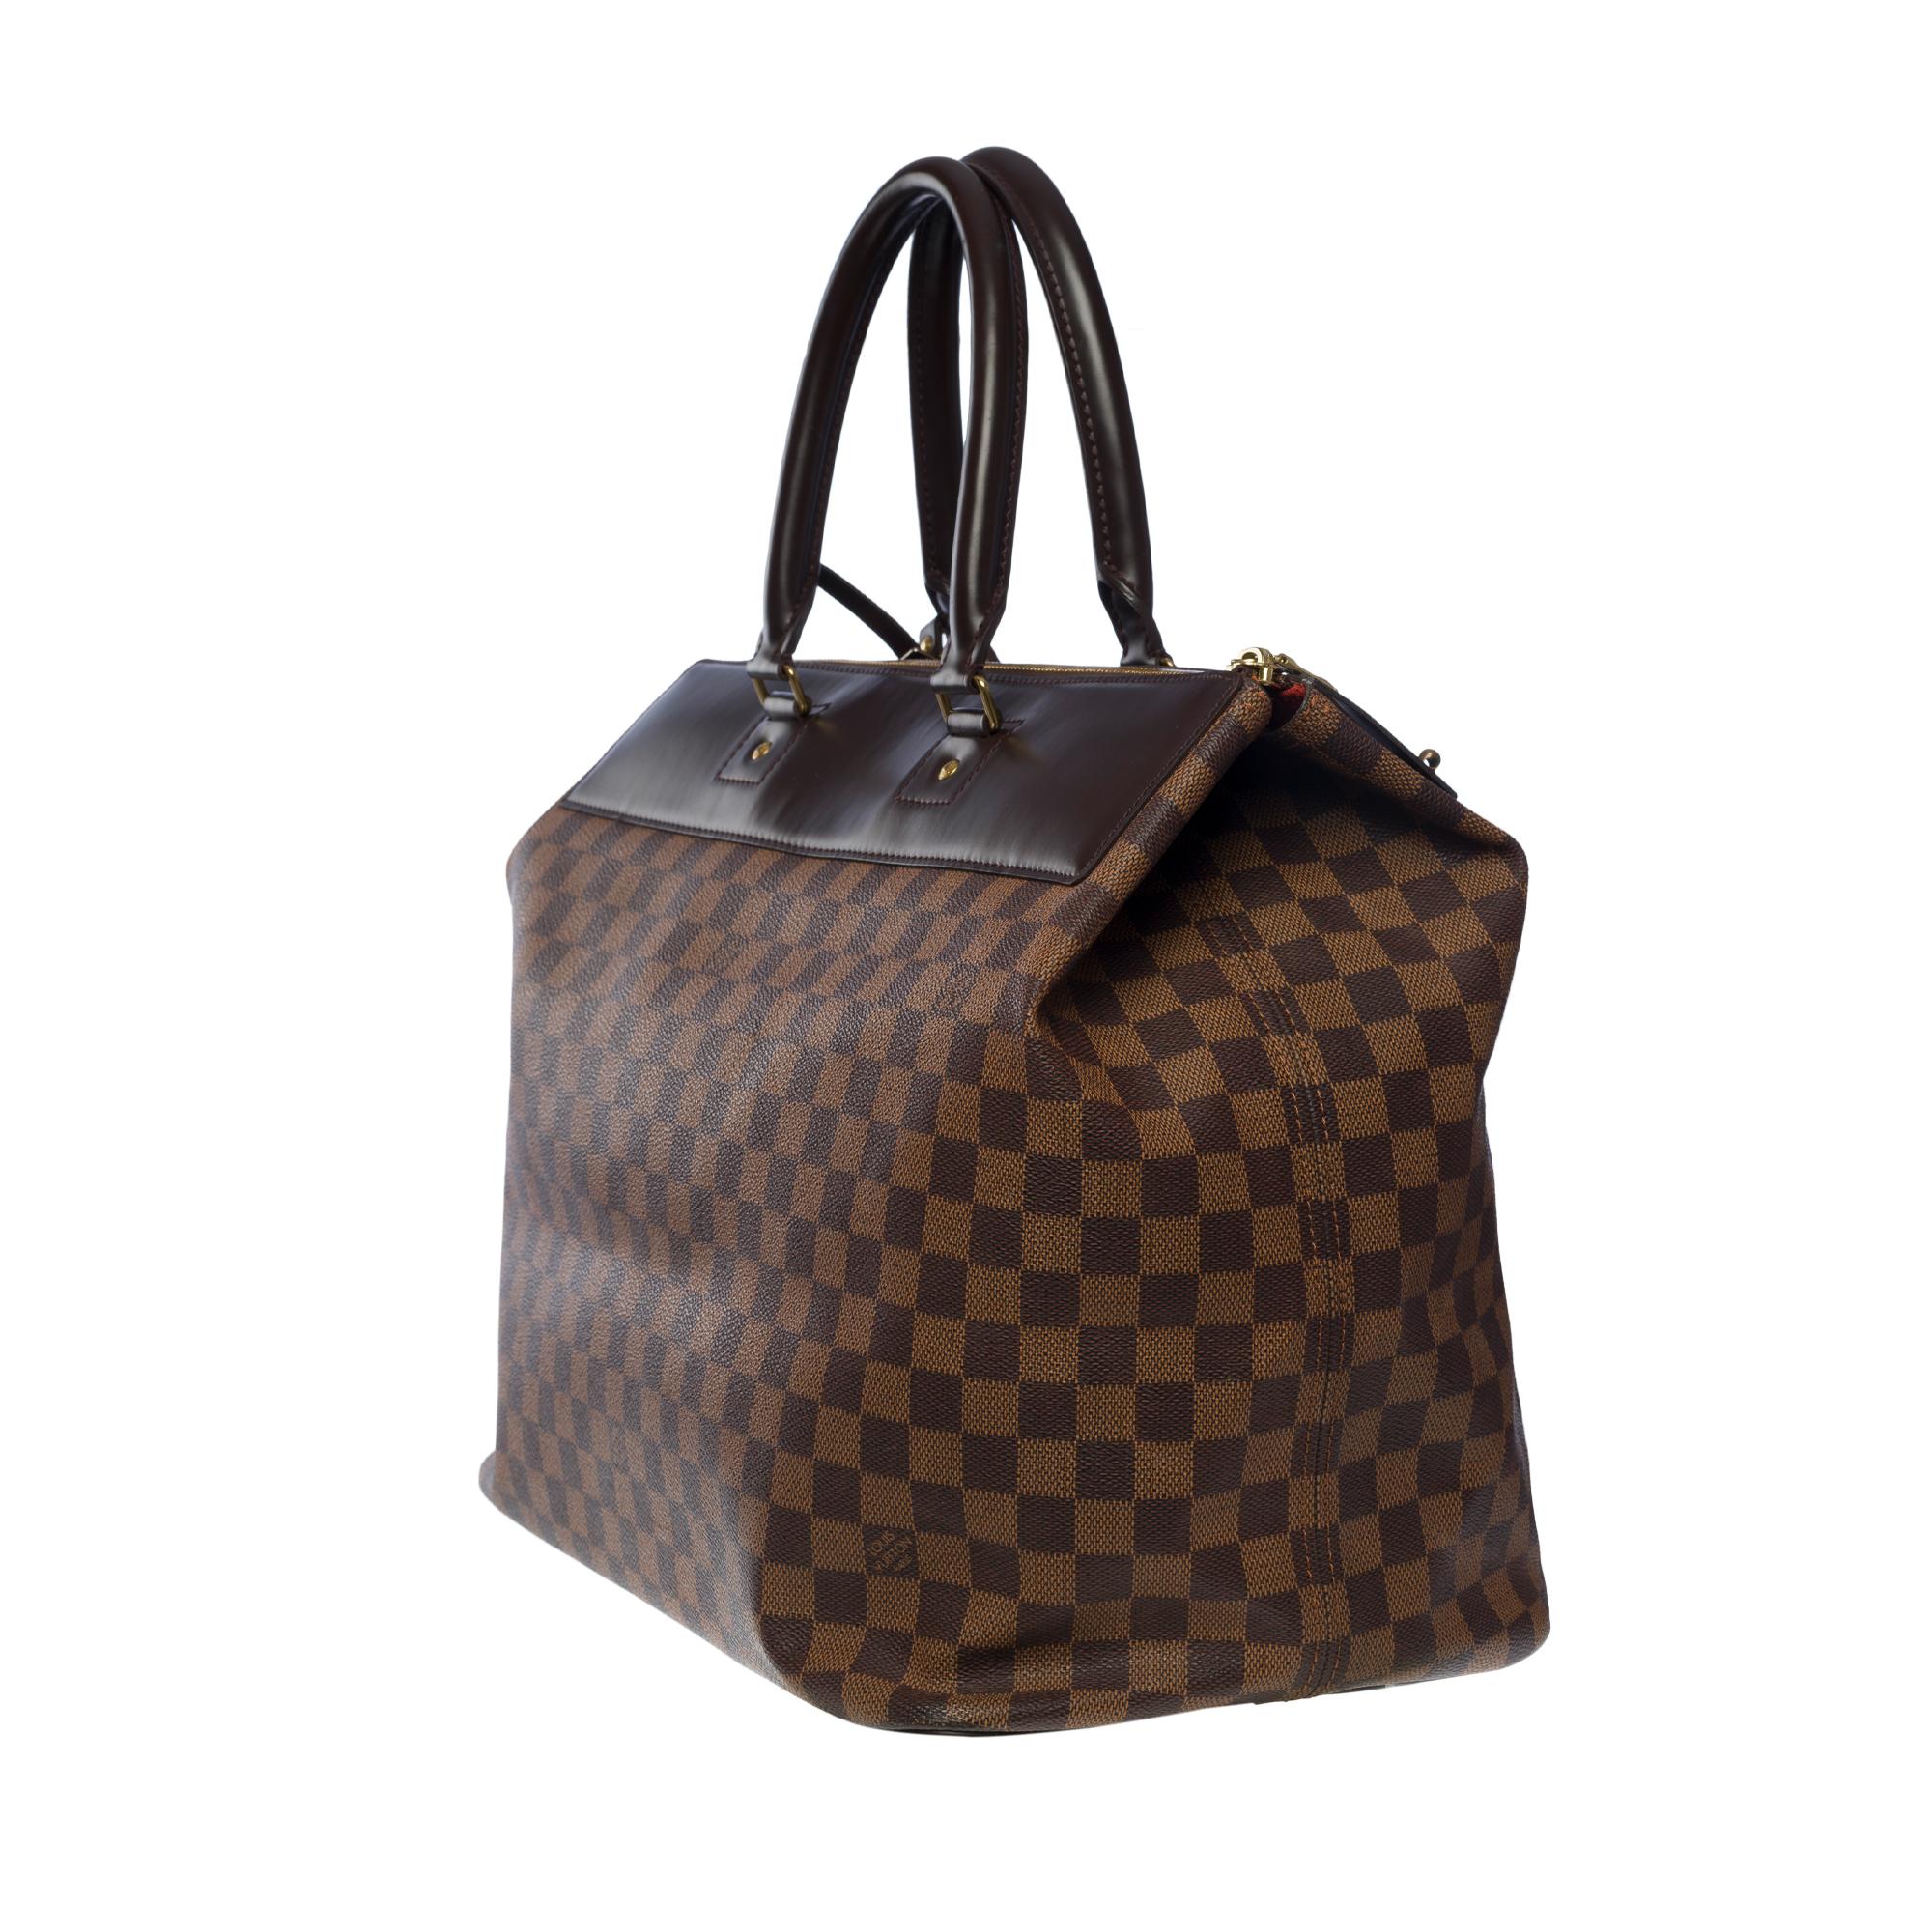 Reisetasche von Louis Vuitton Neo Greenwich aus braunem Segeltuch mit goldenen Beschlägen für Damen oder Herren